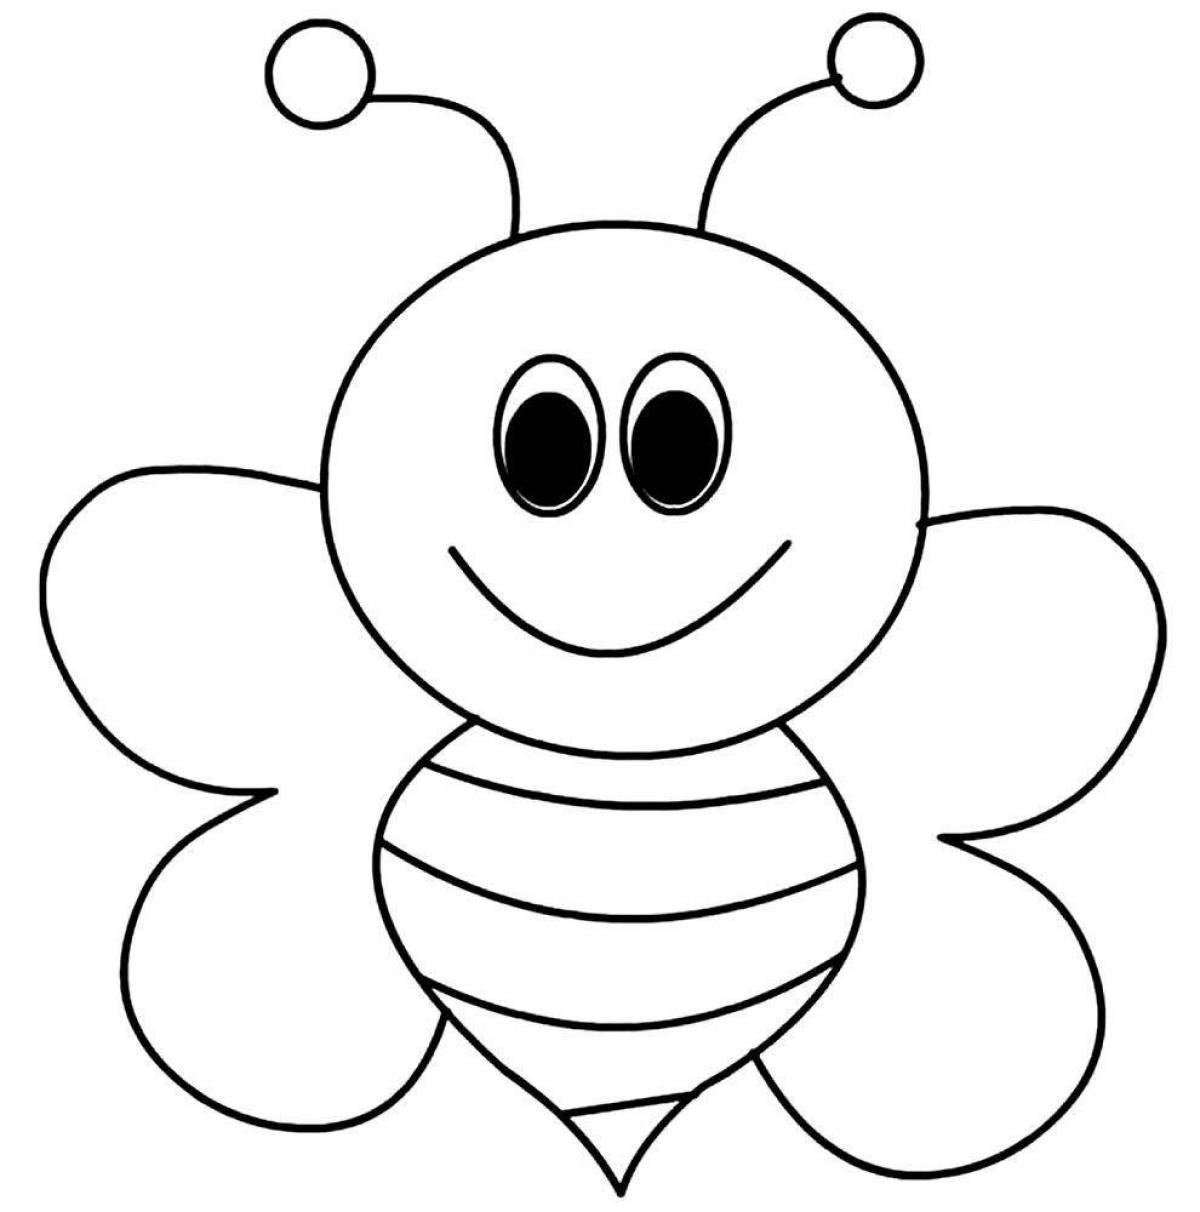 Трафарет для детей 3 лет. Пчела раскраска. Раскраска пчёлка для детей. Пчела раскраска для детей. Пчелка раскраска для малышей.